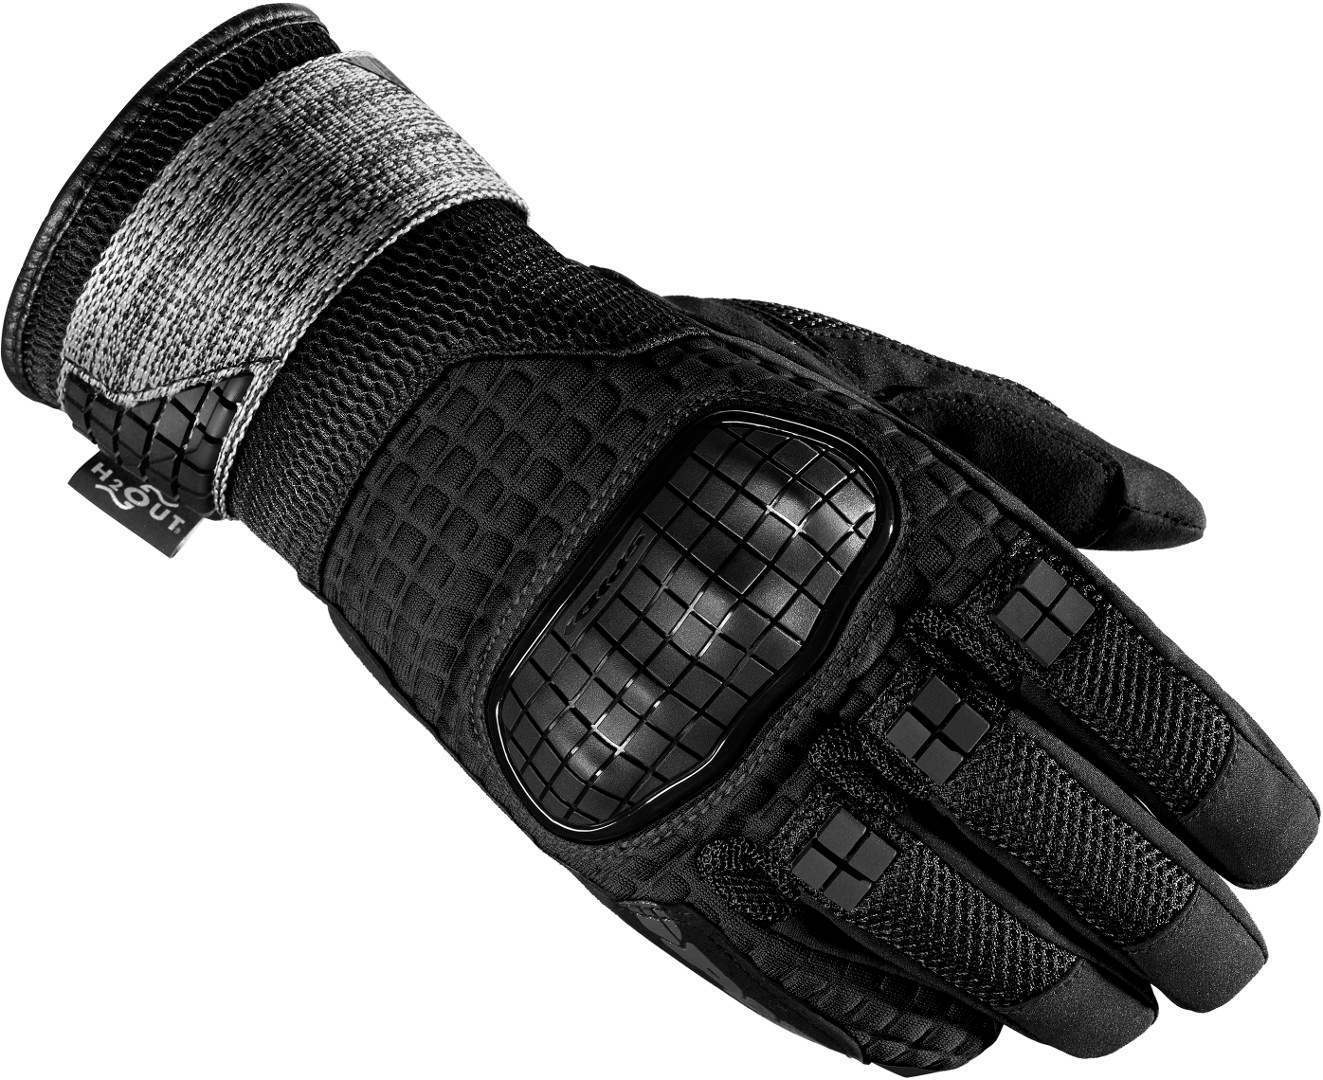 Spidi Rainwarrior Motorrad Handschuhe, schwarz, Größe M, schwarz, Größe M